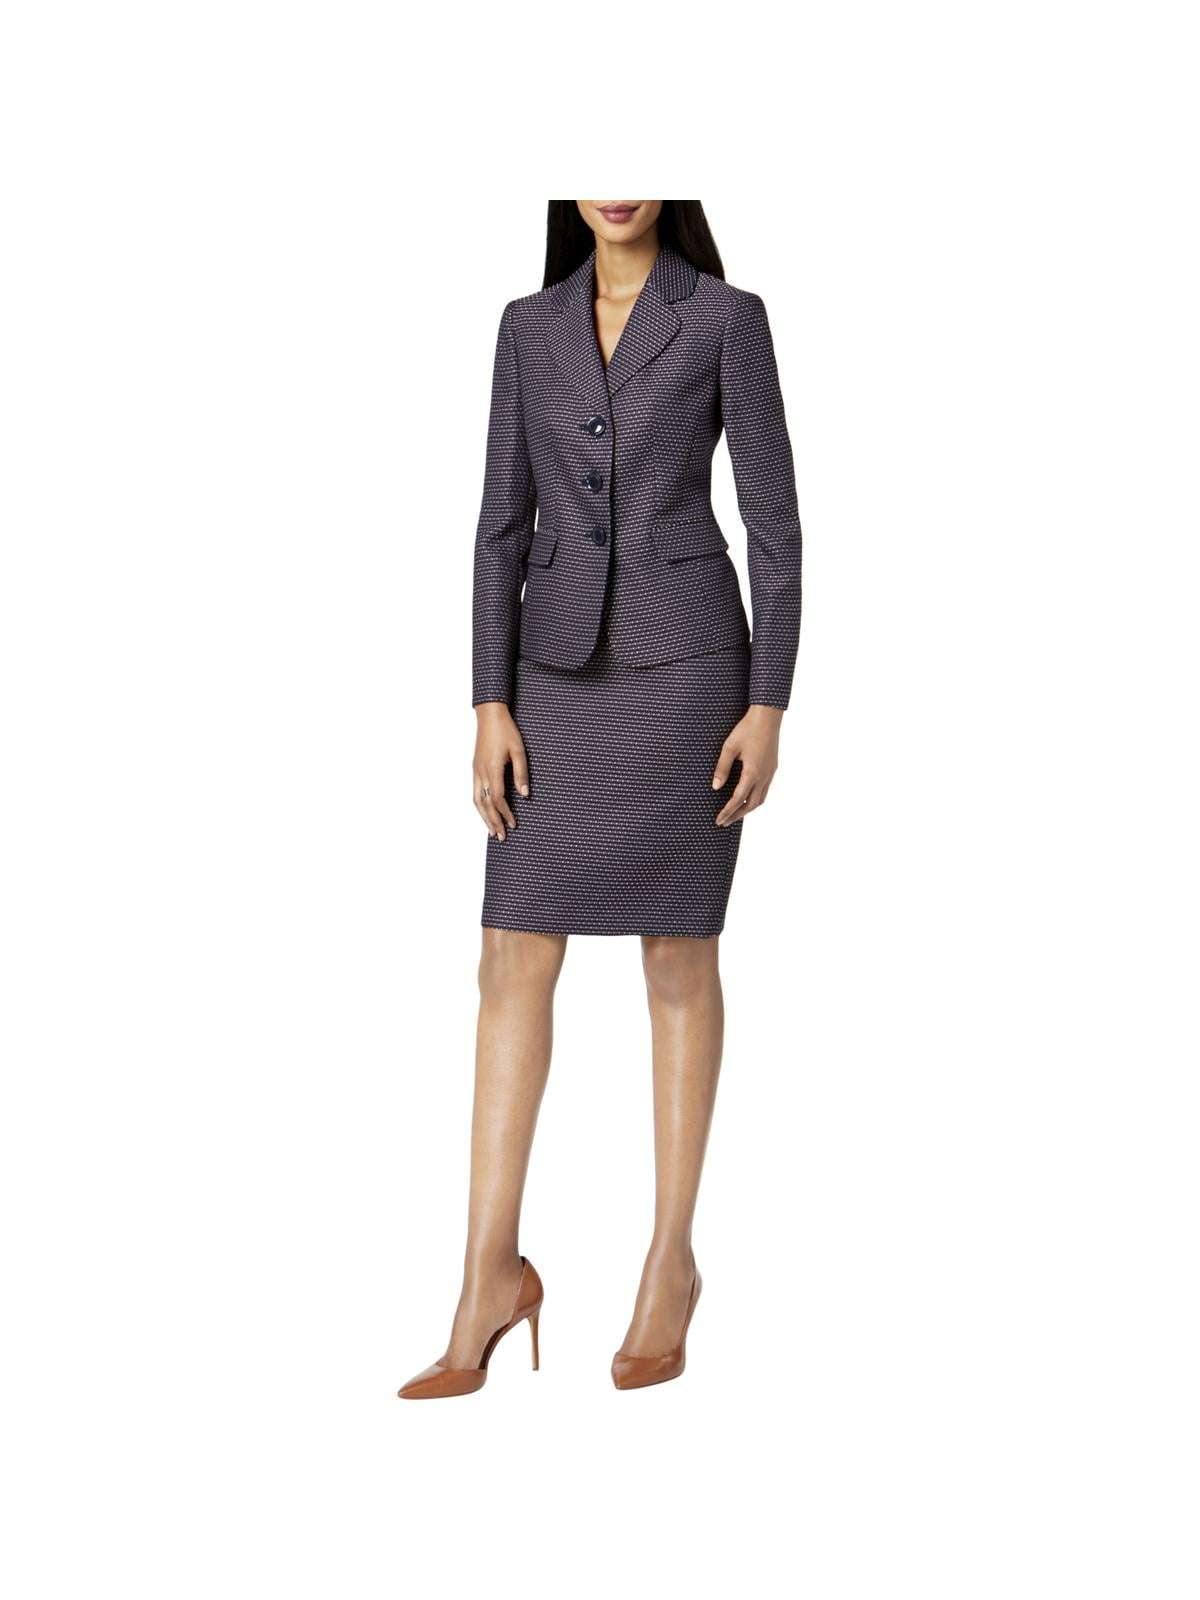 Le Suit Womens Petites Business Attire 